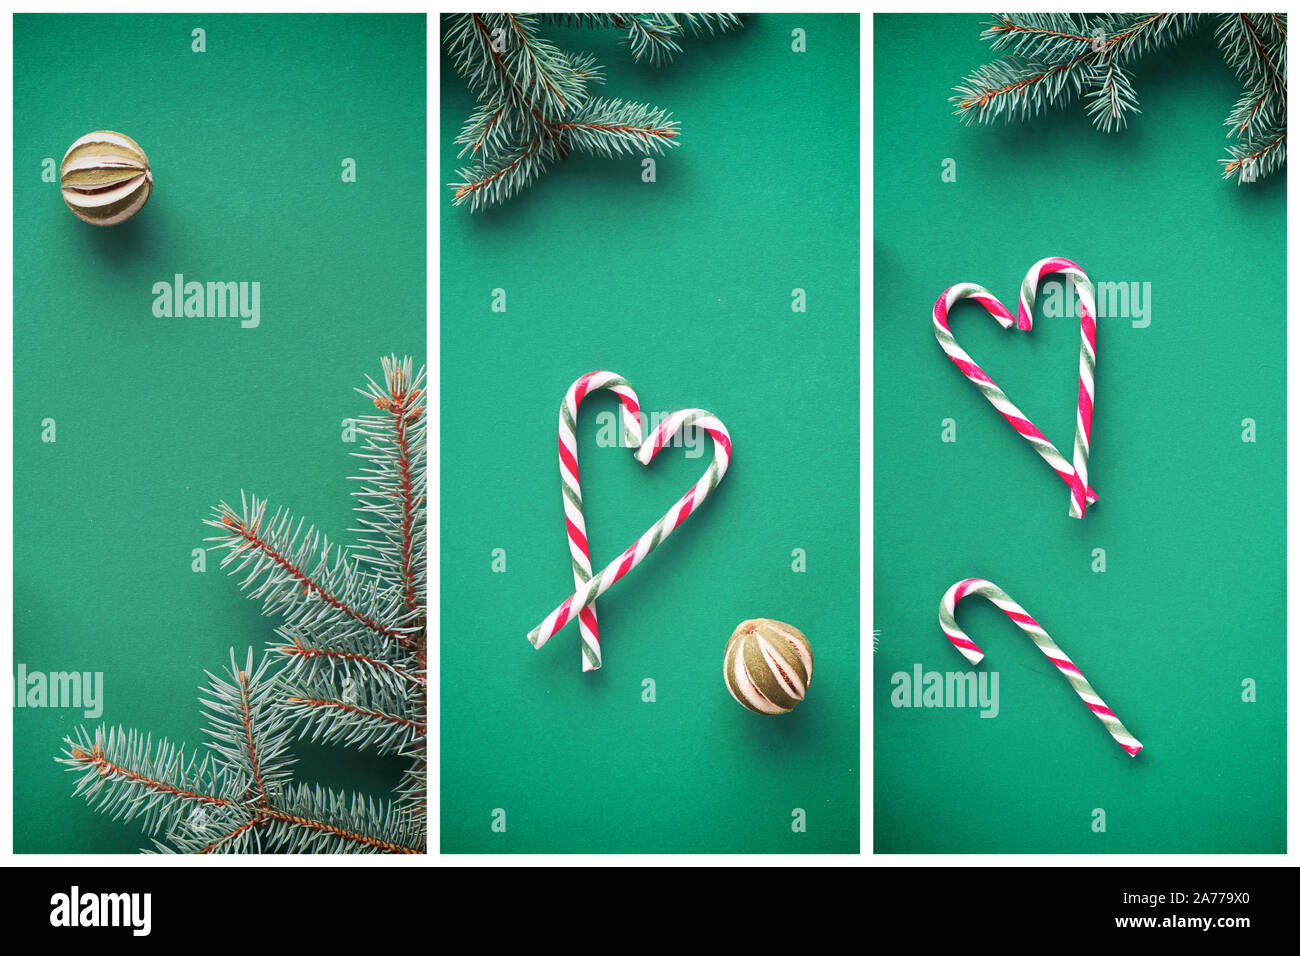 Noël créatif collage de télévision pondent des images avec des branches de sapin, des cannes de bonbon disposés comme les cœurs et de chaux de fruits. Zéro déchets fond de Noël avec Banque D'Images